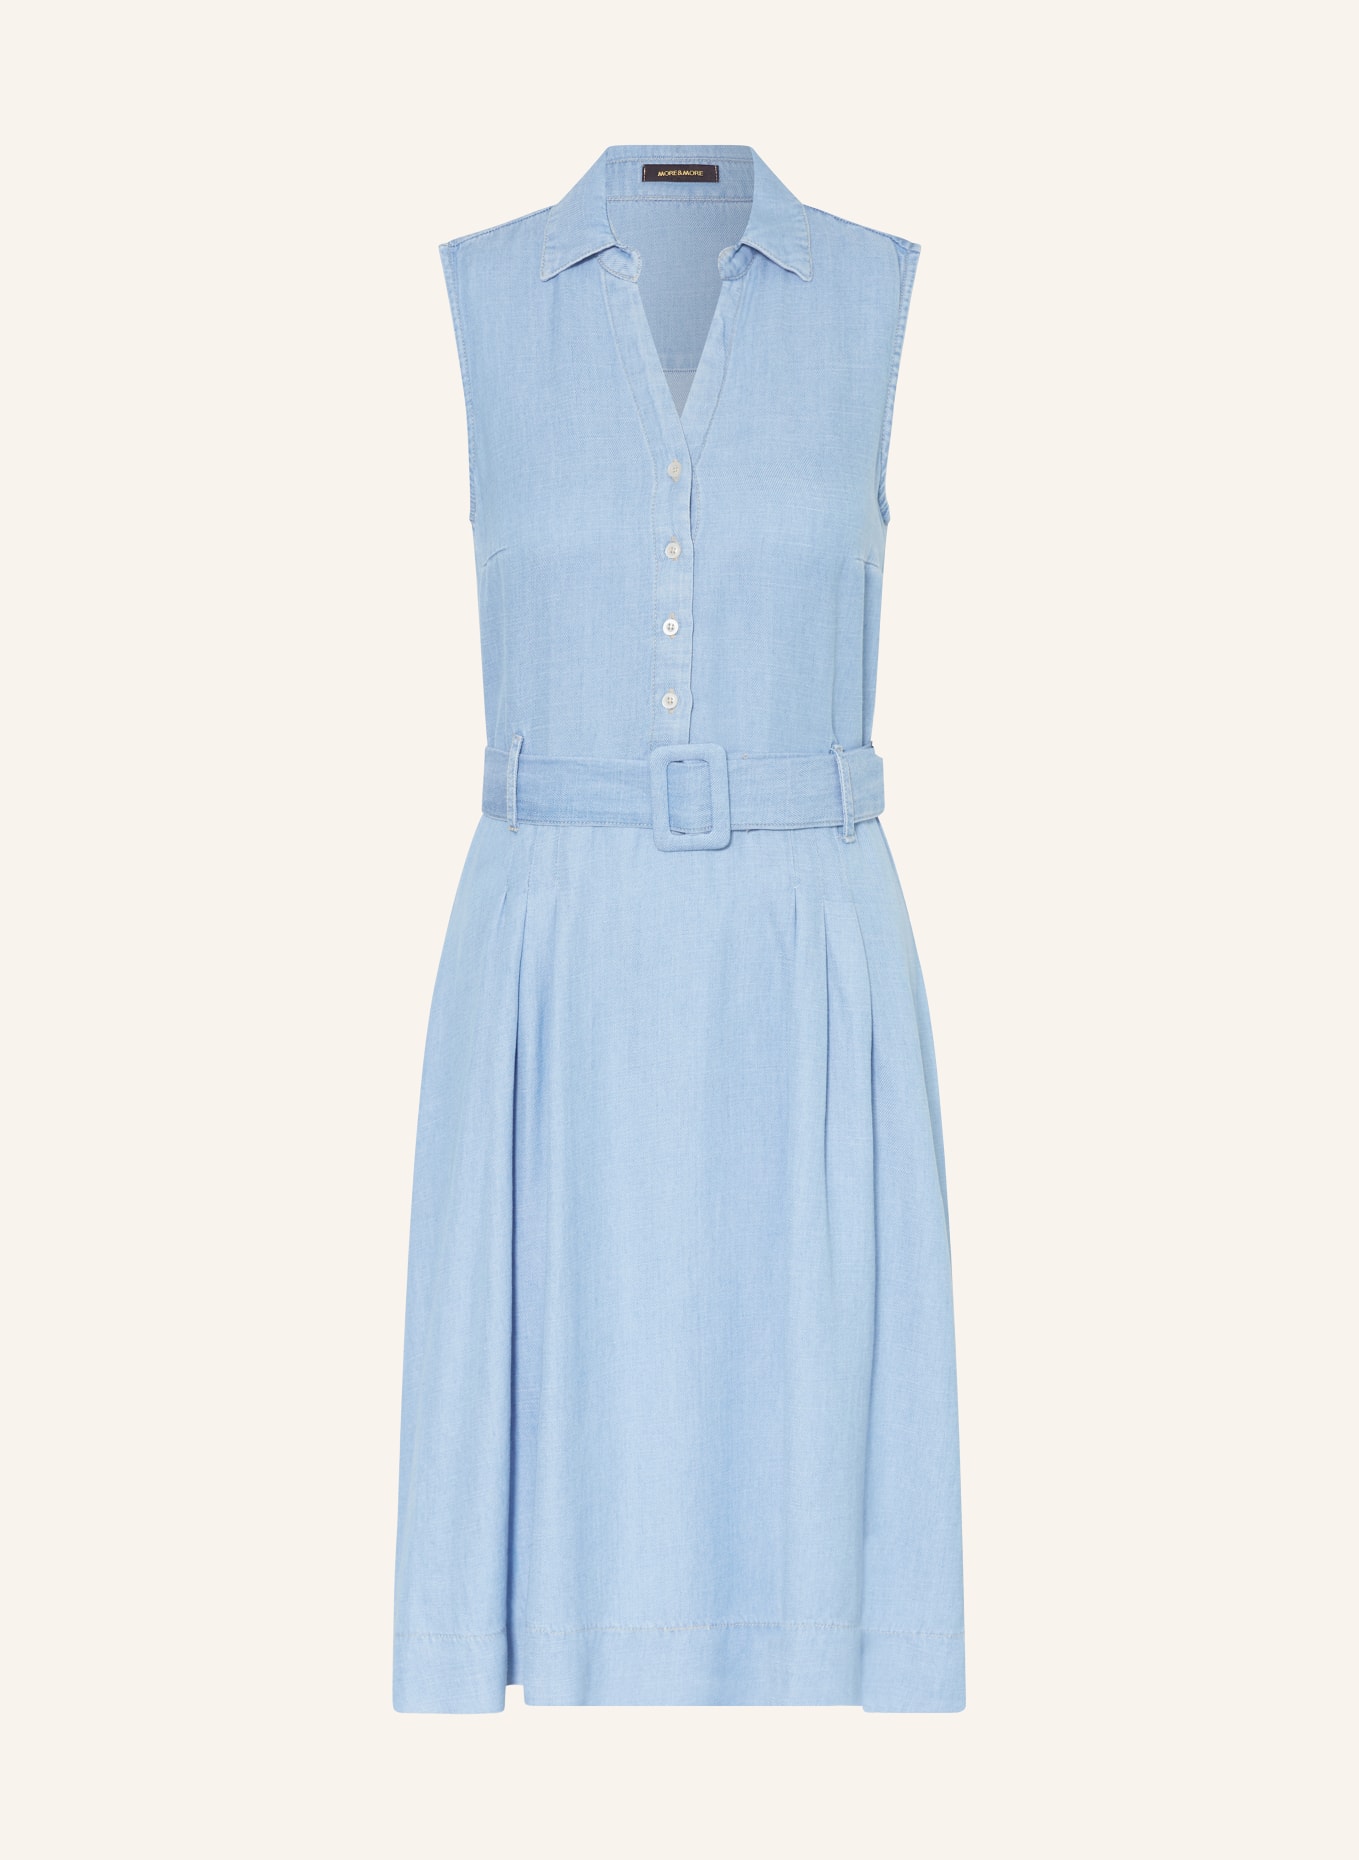 MORE & MORE Dress in denim look, Color: LIGHT BLUE (Image 1)